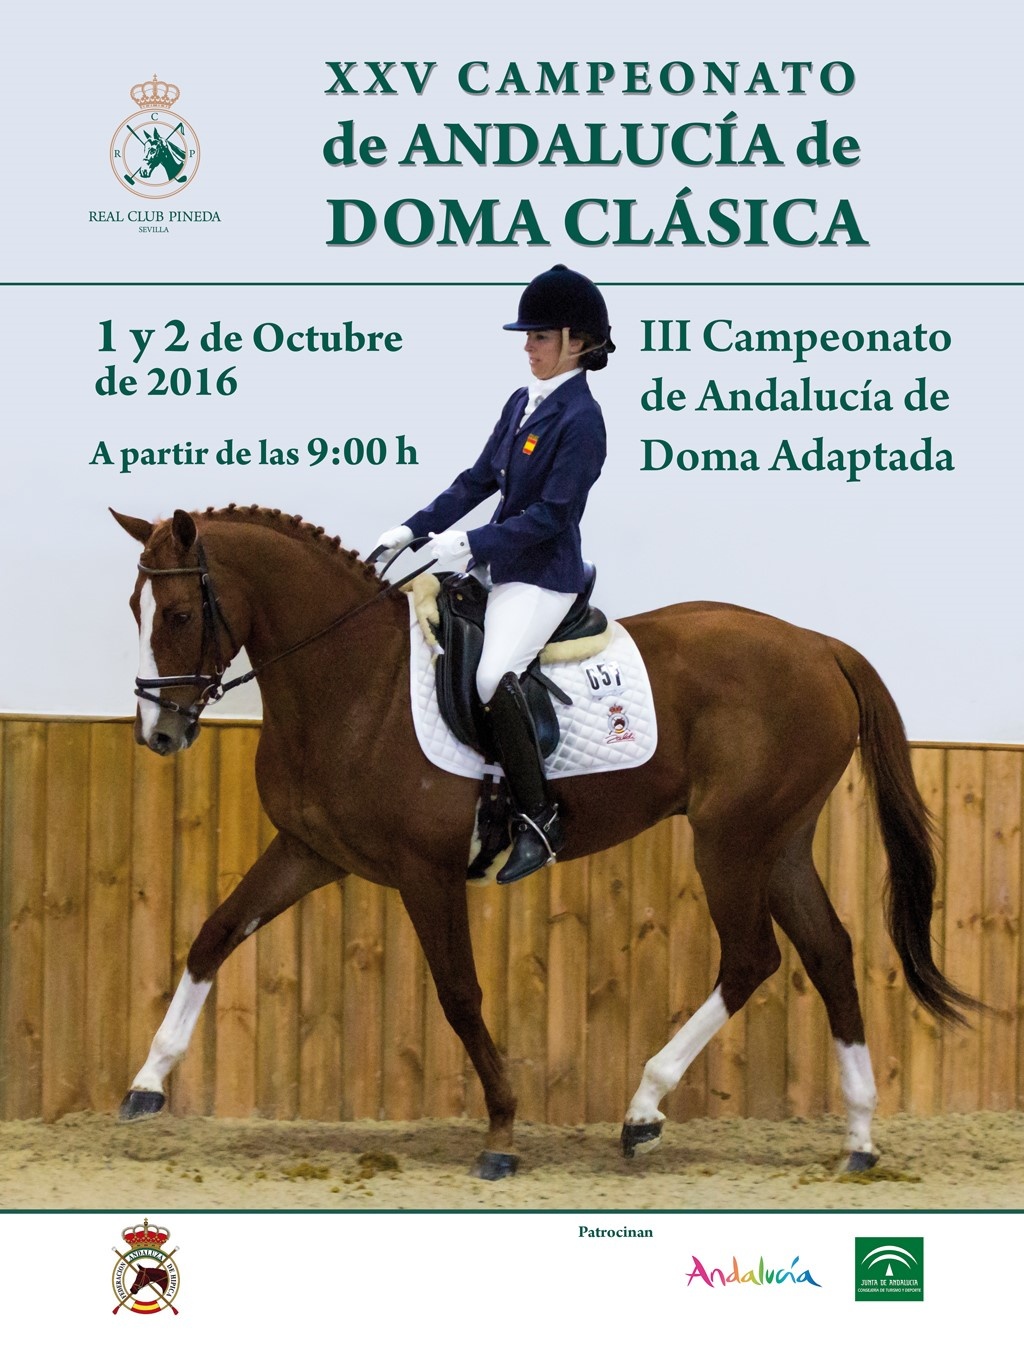 XXV Campeonato de Andalucía de Doma Clásica y Paraecuestre 2016